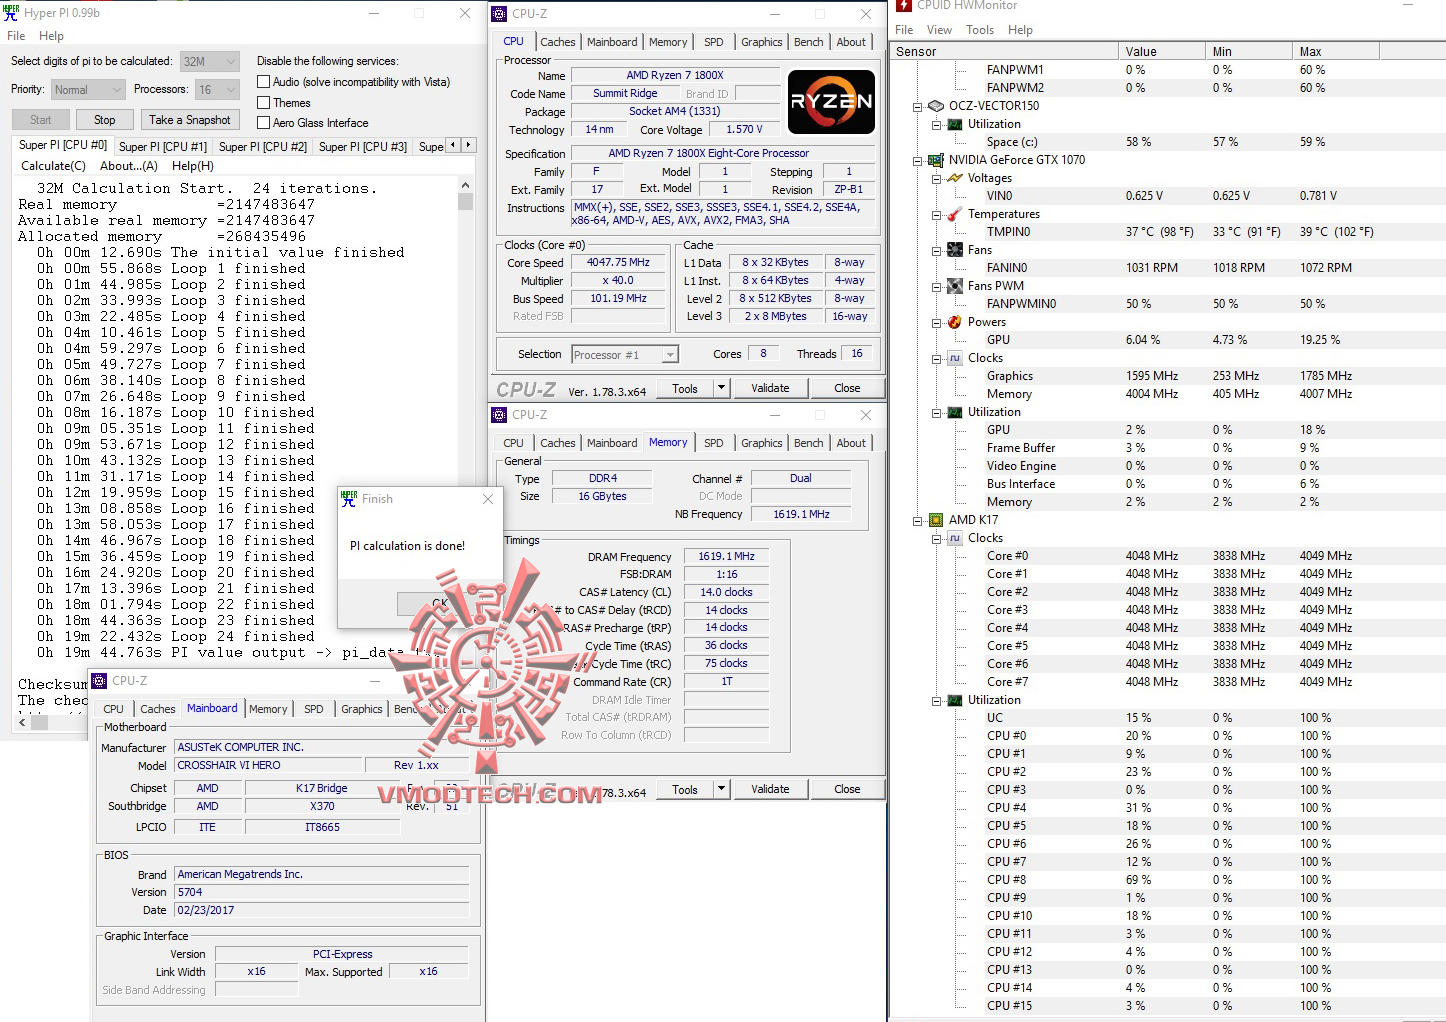 hyperpi oc 1 AMD RYZEN 7 1800X REVIEW 